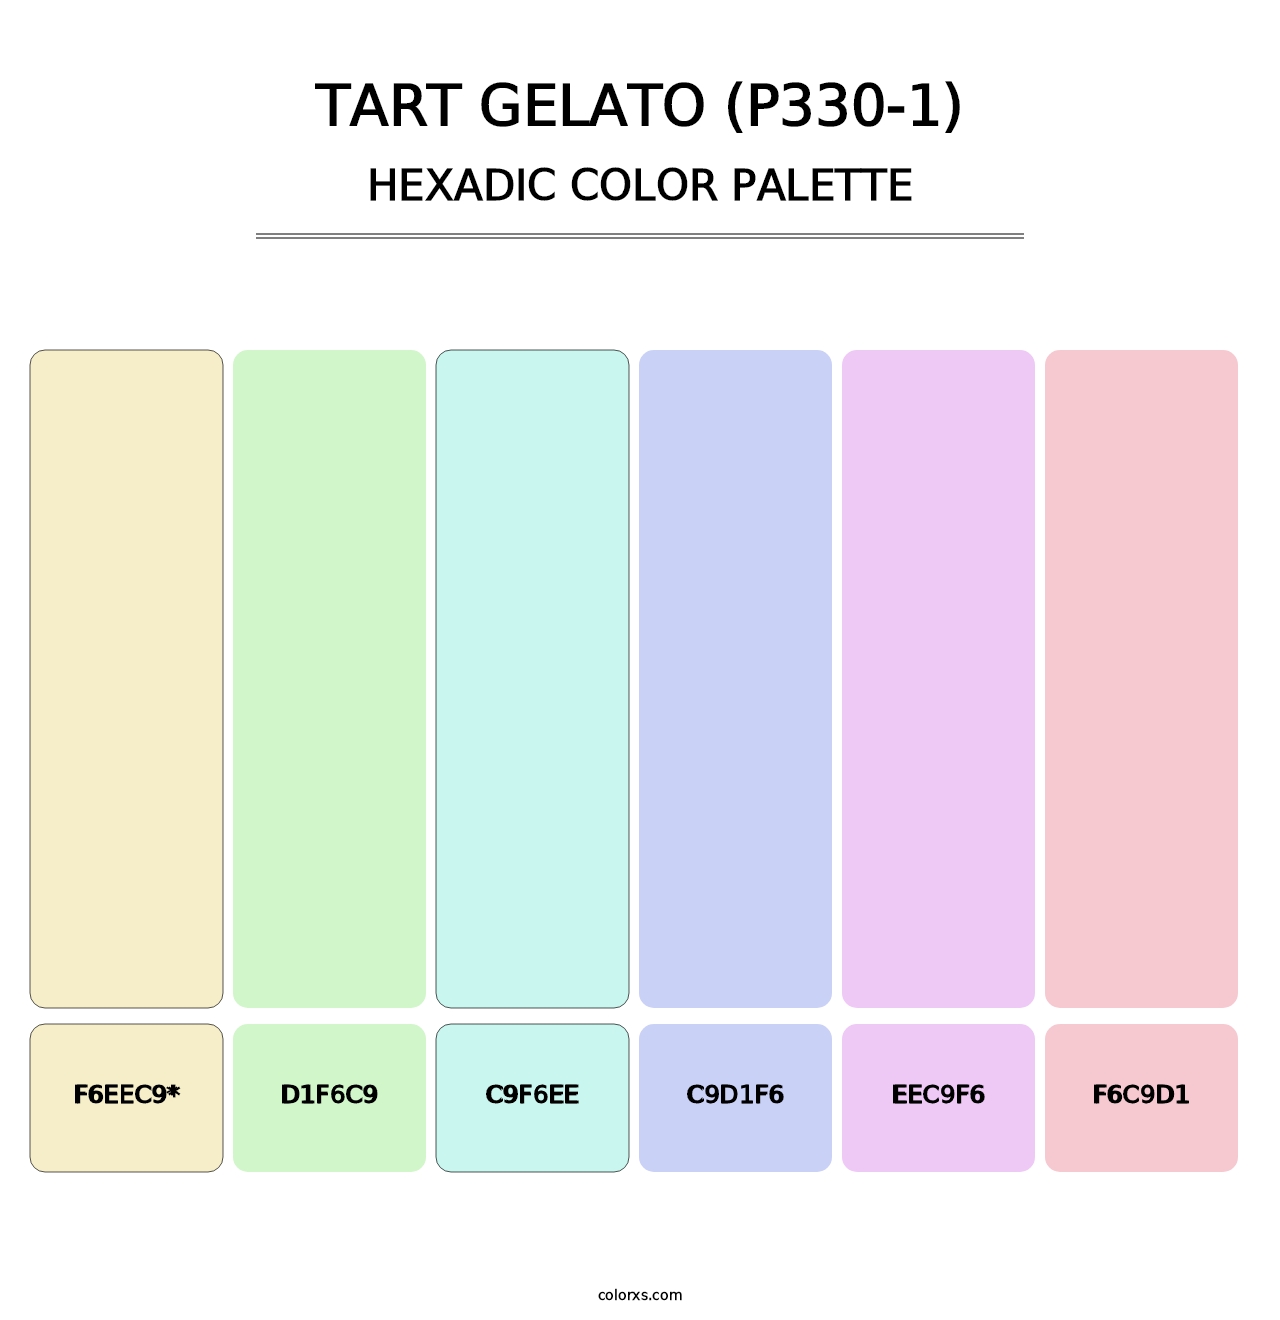 Tart Gelato (P330-1) - Hexadic Color Palette